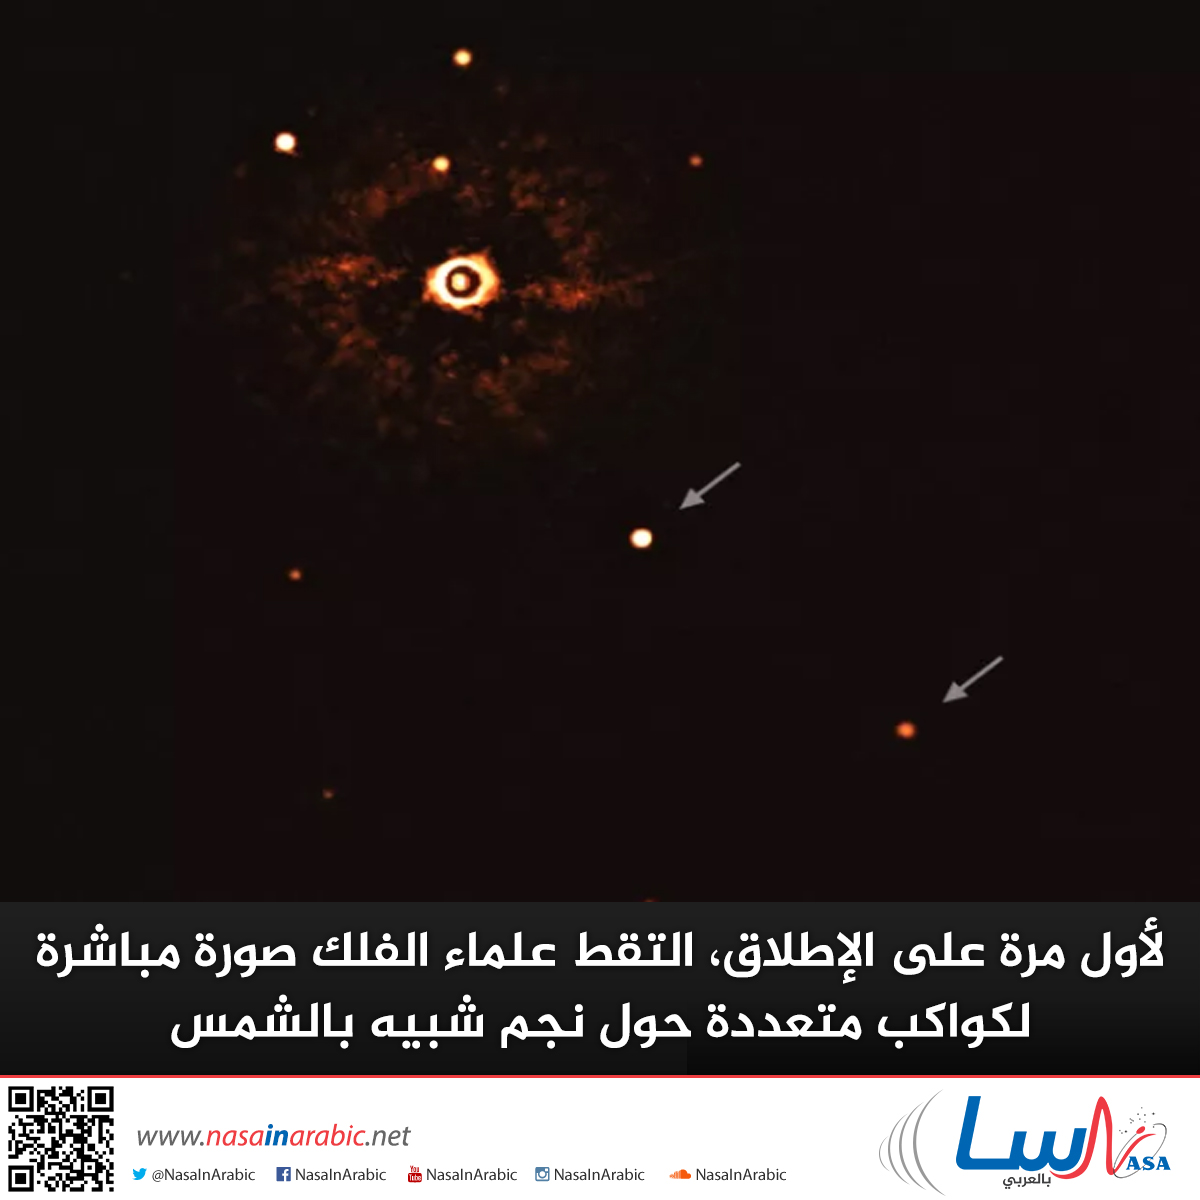 لأول مرة على الإطلاق، التقط علماء الفلك صورة مباشرة لكواكب متعددة حول نجم شبيه بالشمس